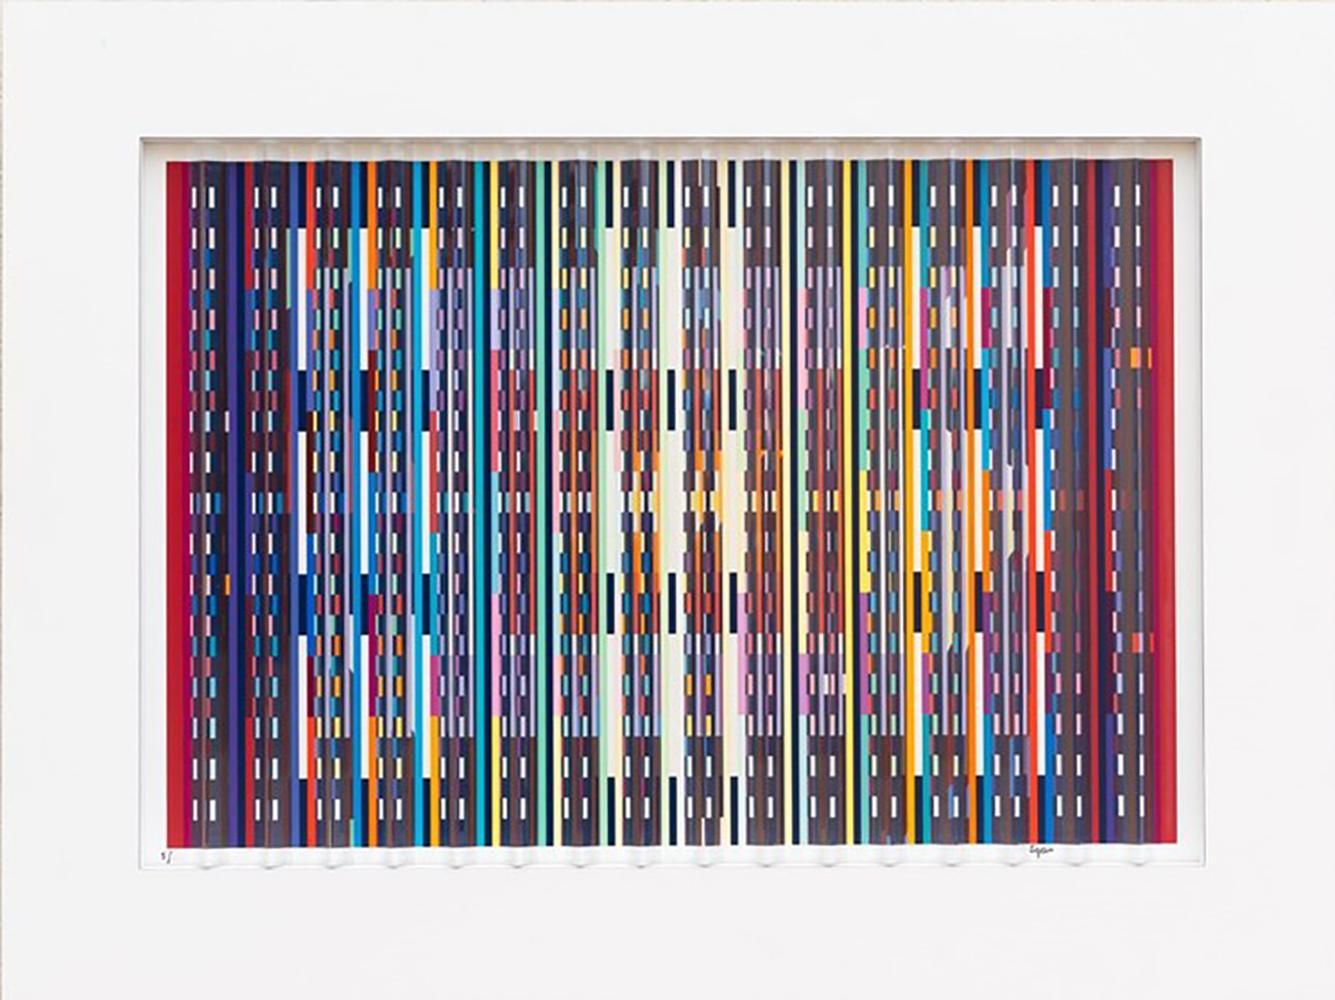 Yaacov Agam
"Fascination
1995
Prismographe, sérigraphie couleur avec des prismes transparents.
"Fascination" est une sculpture murale tridimensionnelle auto-encadrée en sérigraphie 69 couleurs avec un cadre blanc intégral.
Il comprend seize prismes